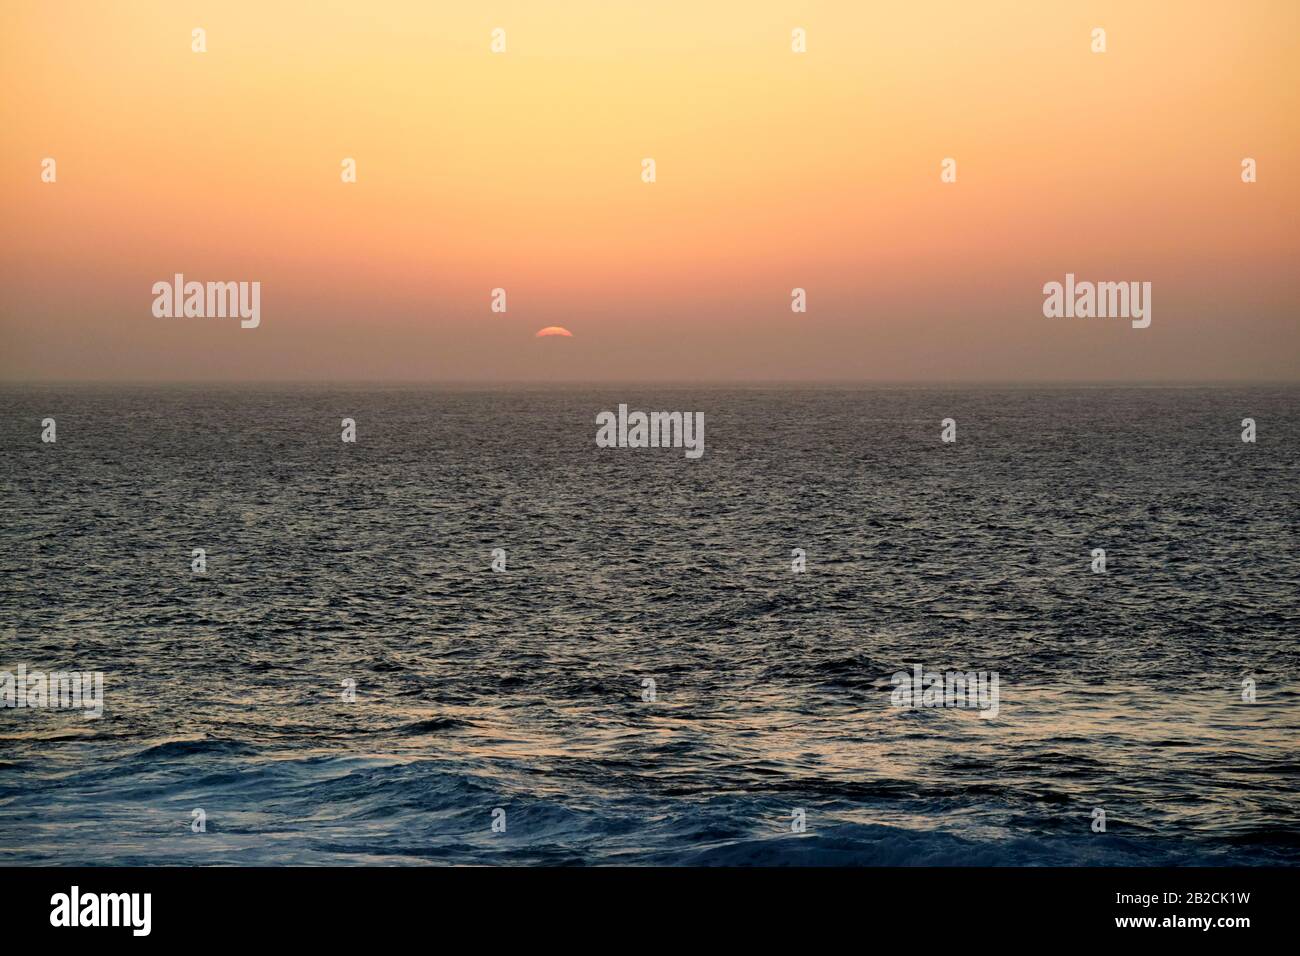 Rote Sonne untergeht am Abend mit rotem Himmel aus sahara-staub, der durch den Kalima-Wind von afrika geblasen wird Lanzarote kanarische Inseln spanien Stockfoto